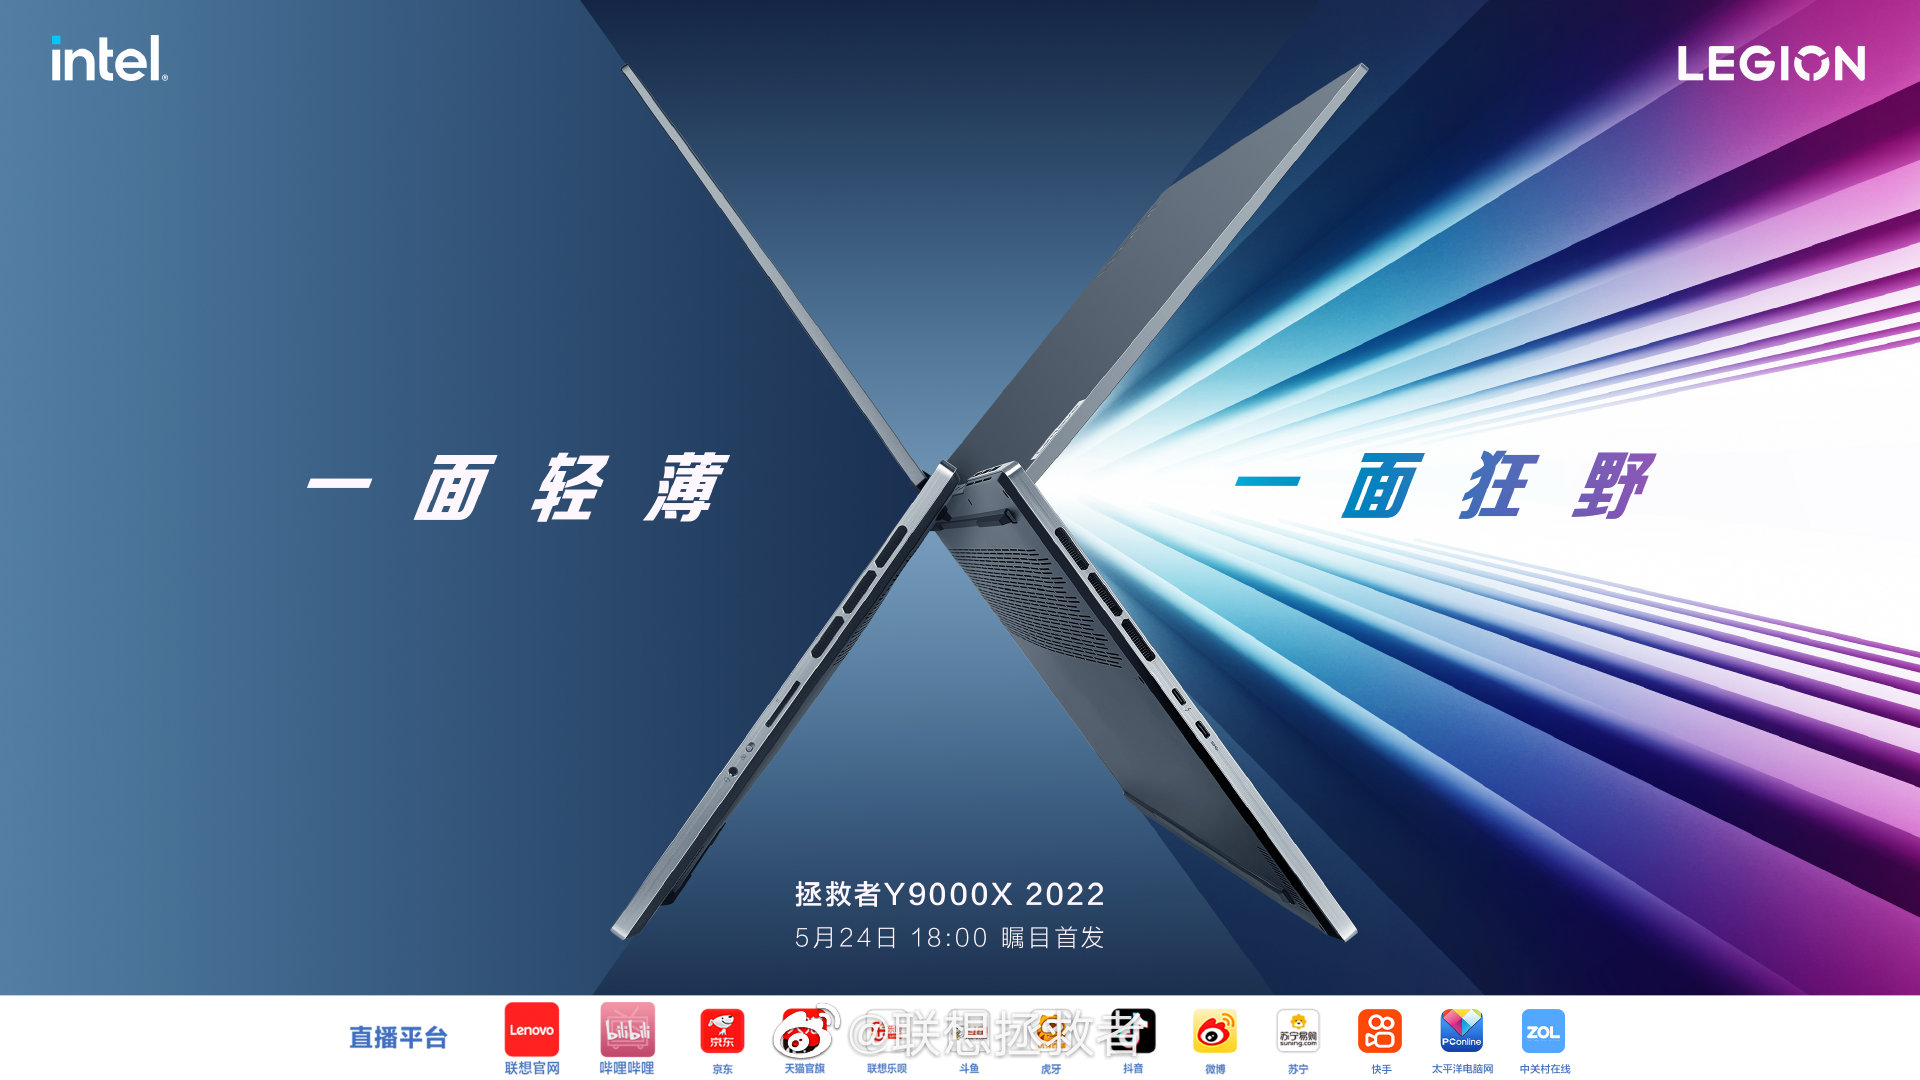 联想预热Y9000X 2022款 将于5月24日正式发布